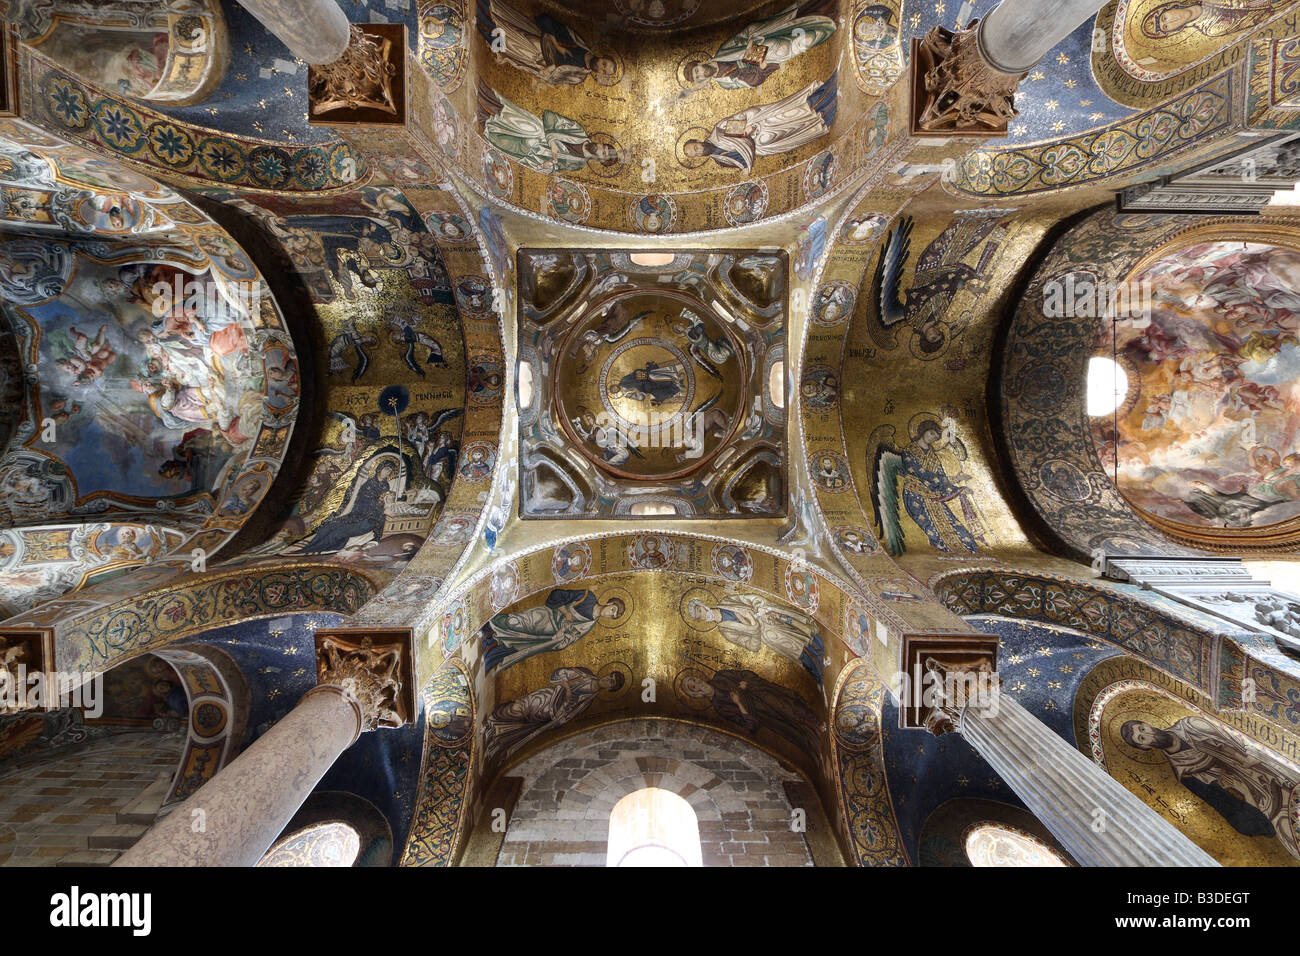 Ceiling of La Martorana church, Palermo, Sicily, Italy Stock Photo